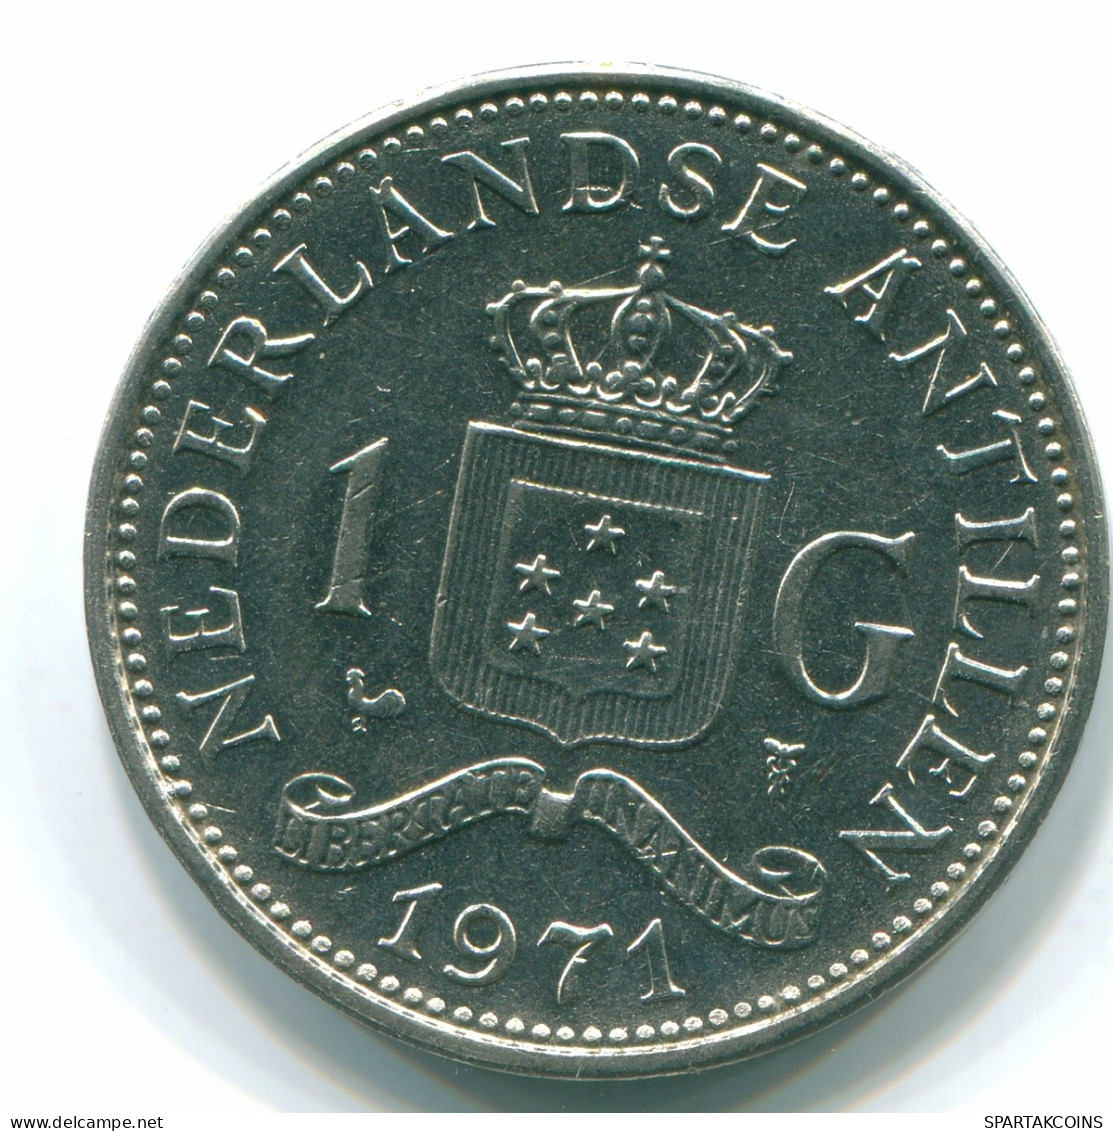 1 GULDEN 1971 NETHERLANDS ANTILLES Nickel Colonial Coin #S11938.U.A - Niederländische Antillen